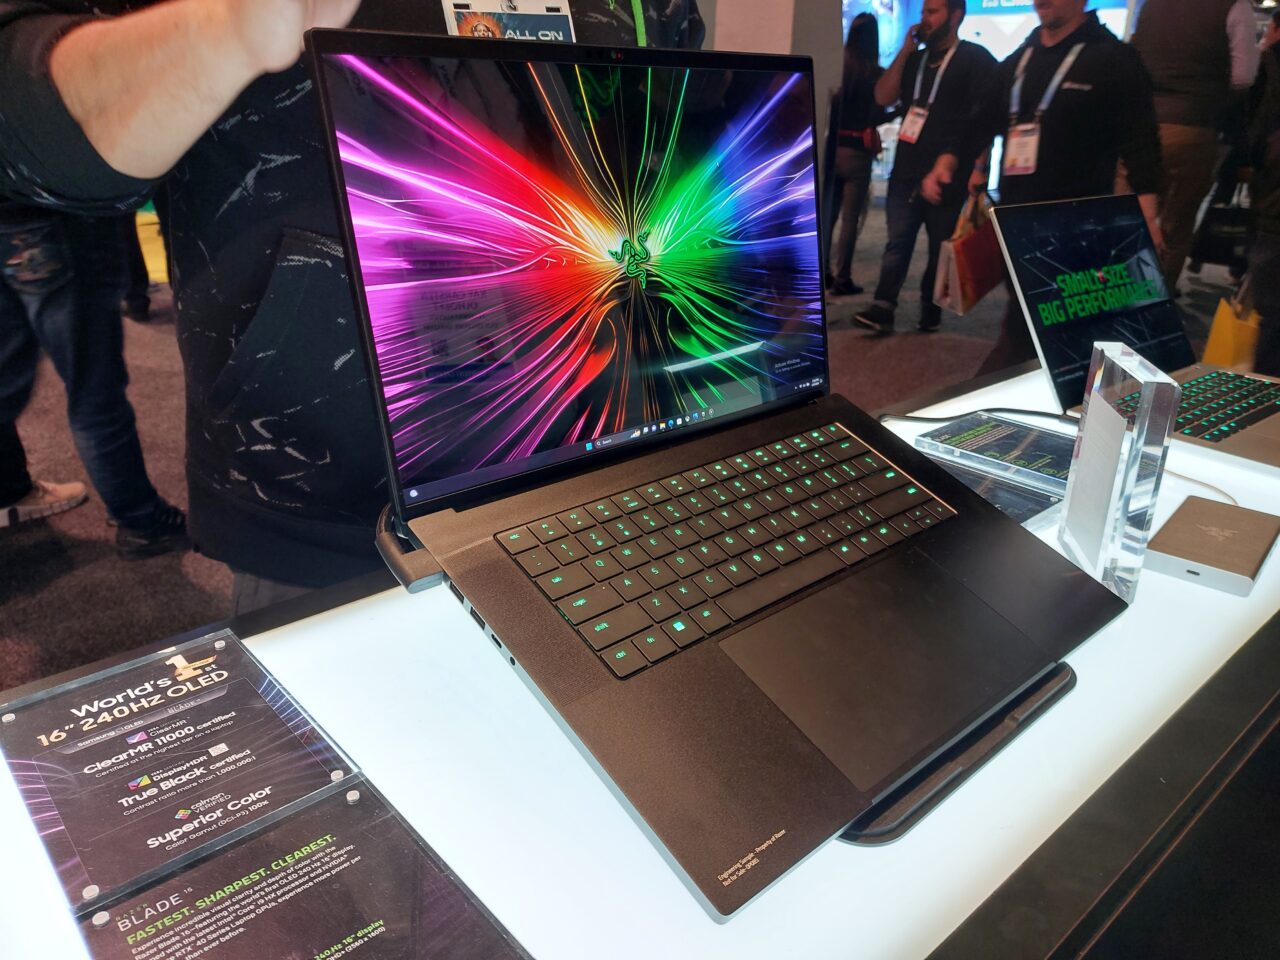 Laptop Razer Blade 16 z ekranem OLED o przekątnej 16 cali i rozdzielczości 4K prezentowany na wystawie, z otwartą klapą i widocznym kolorowym obrazem na ekranie. Na pierwszym planie tabliczka informacyjna o cechach ekranu, w tle inne urządzenia i odwiedzający.